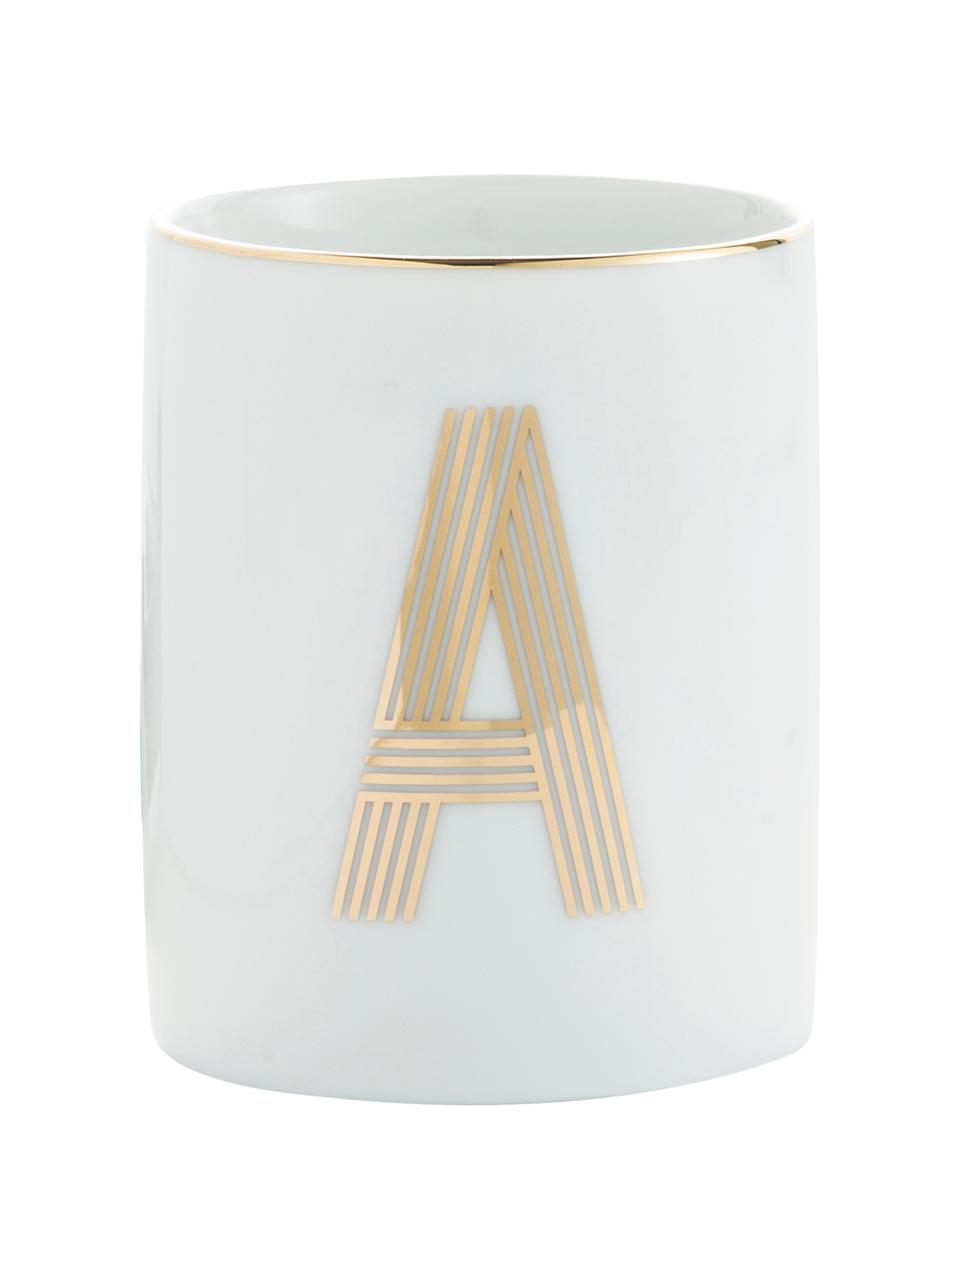 Porzellan-Becher Yours mit Buchstaben (Varianten von A bis Z) in Gold, Porzellan, Weiß, Goldfarben, Becher P, 300 ml